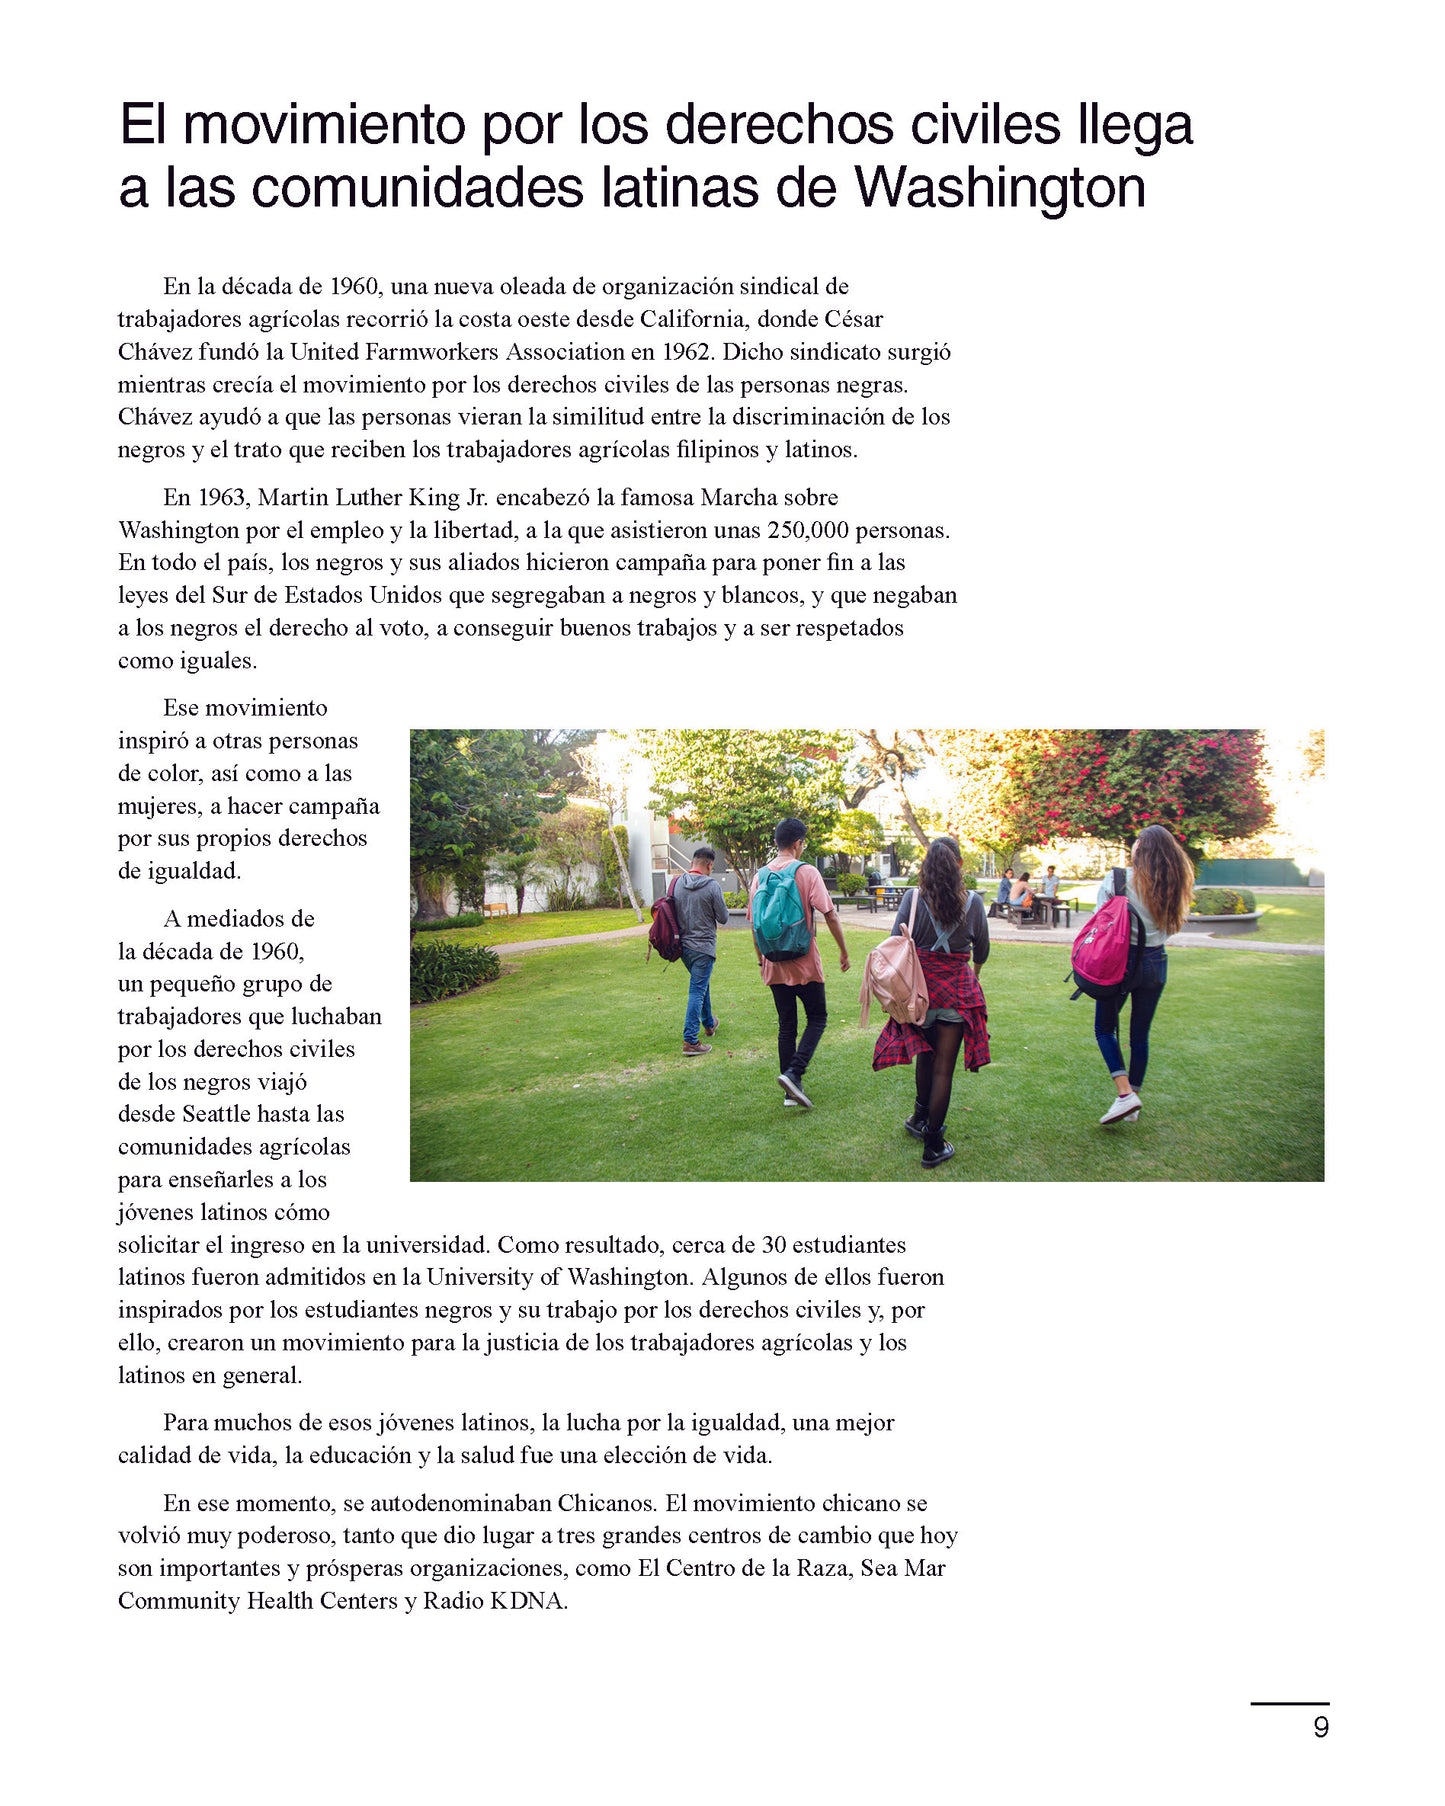 DIGITAL: La historia de los latinos en Washington